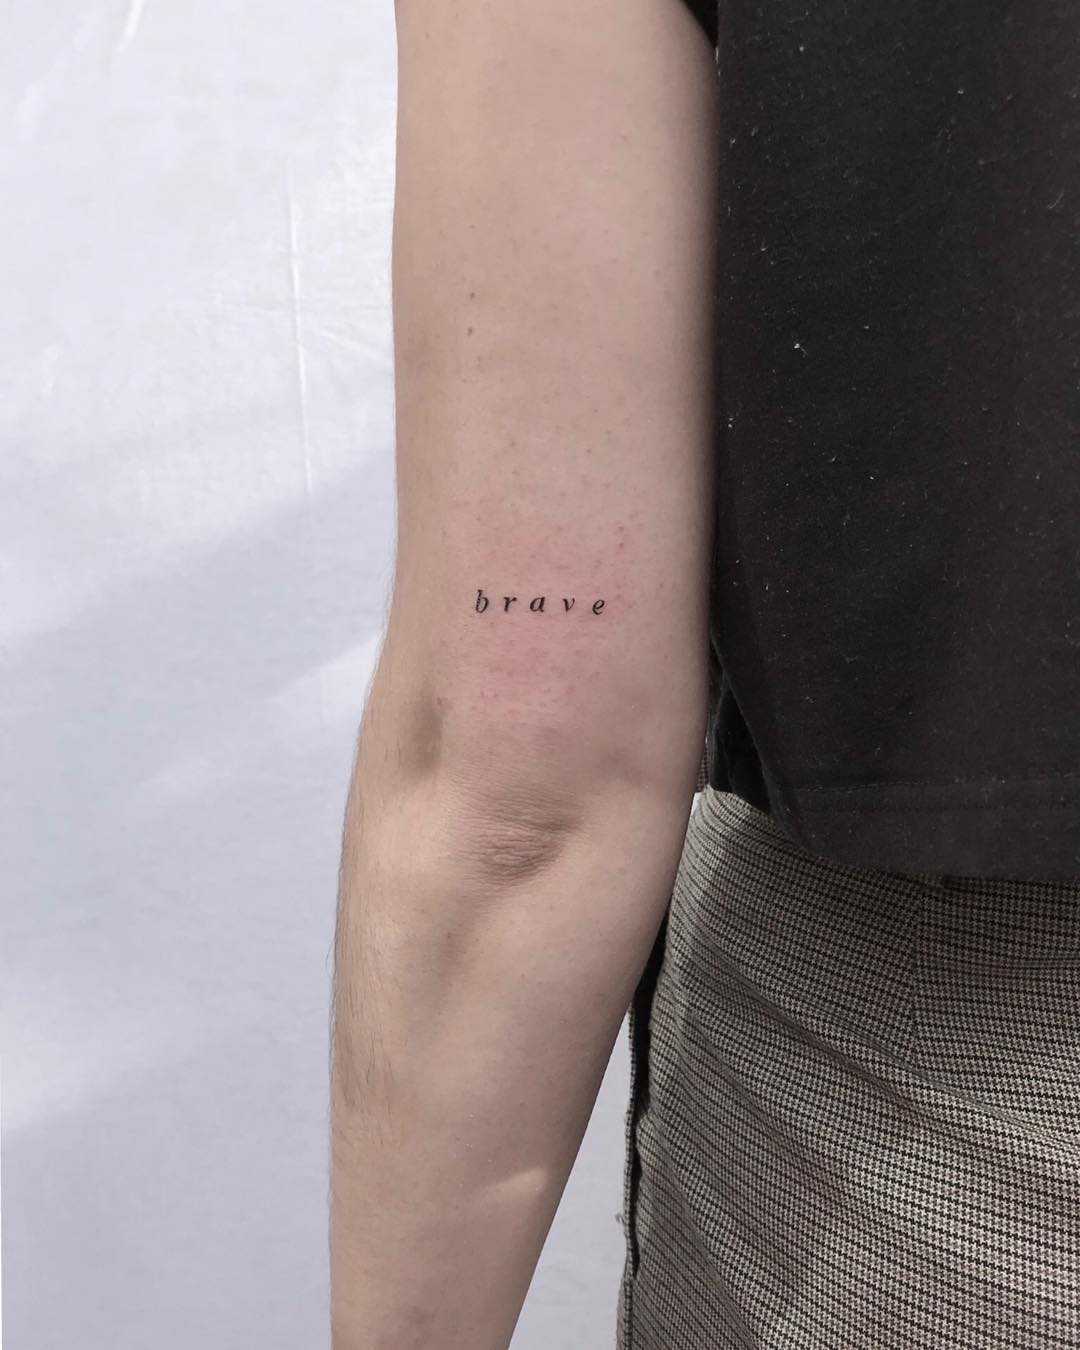 Brave tattoo by Oscar Jesus